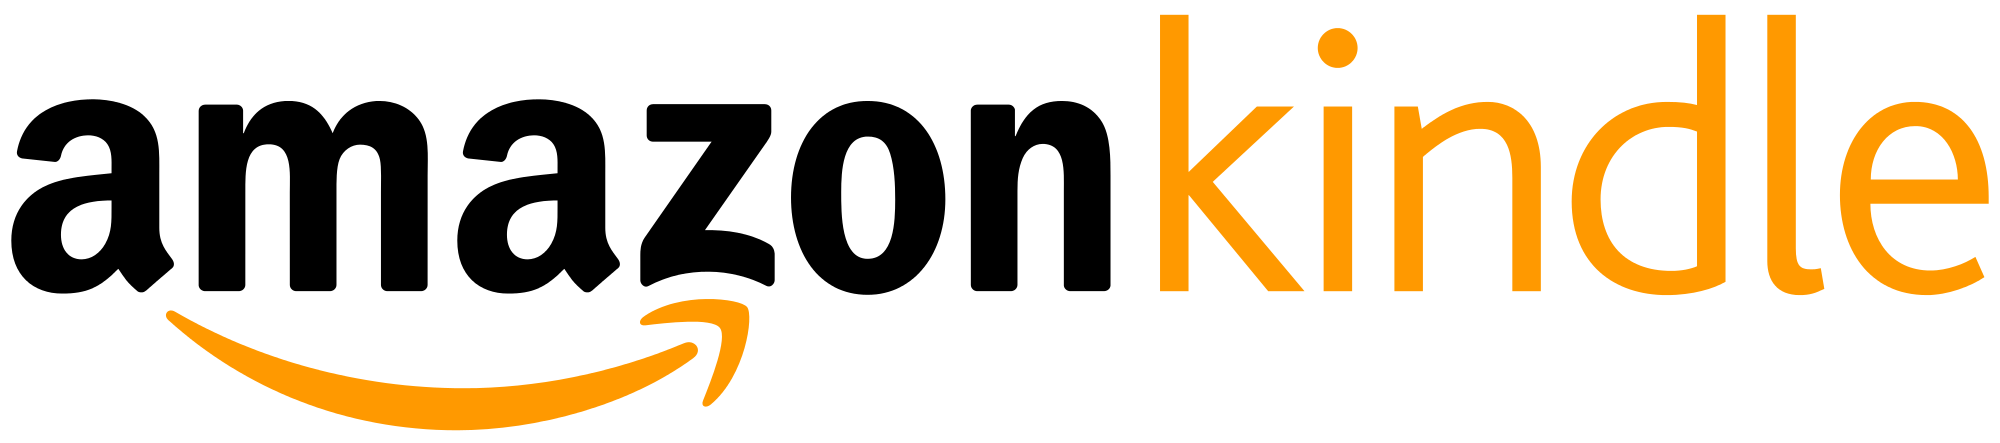 Kindle; Logo of Amazon Amazon